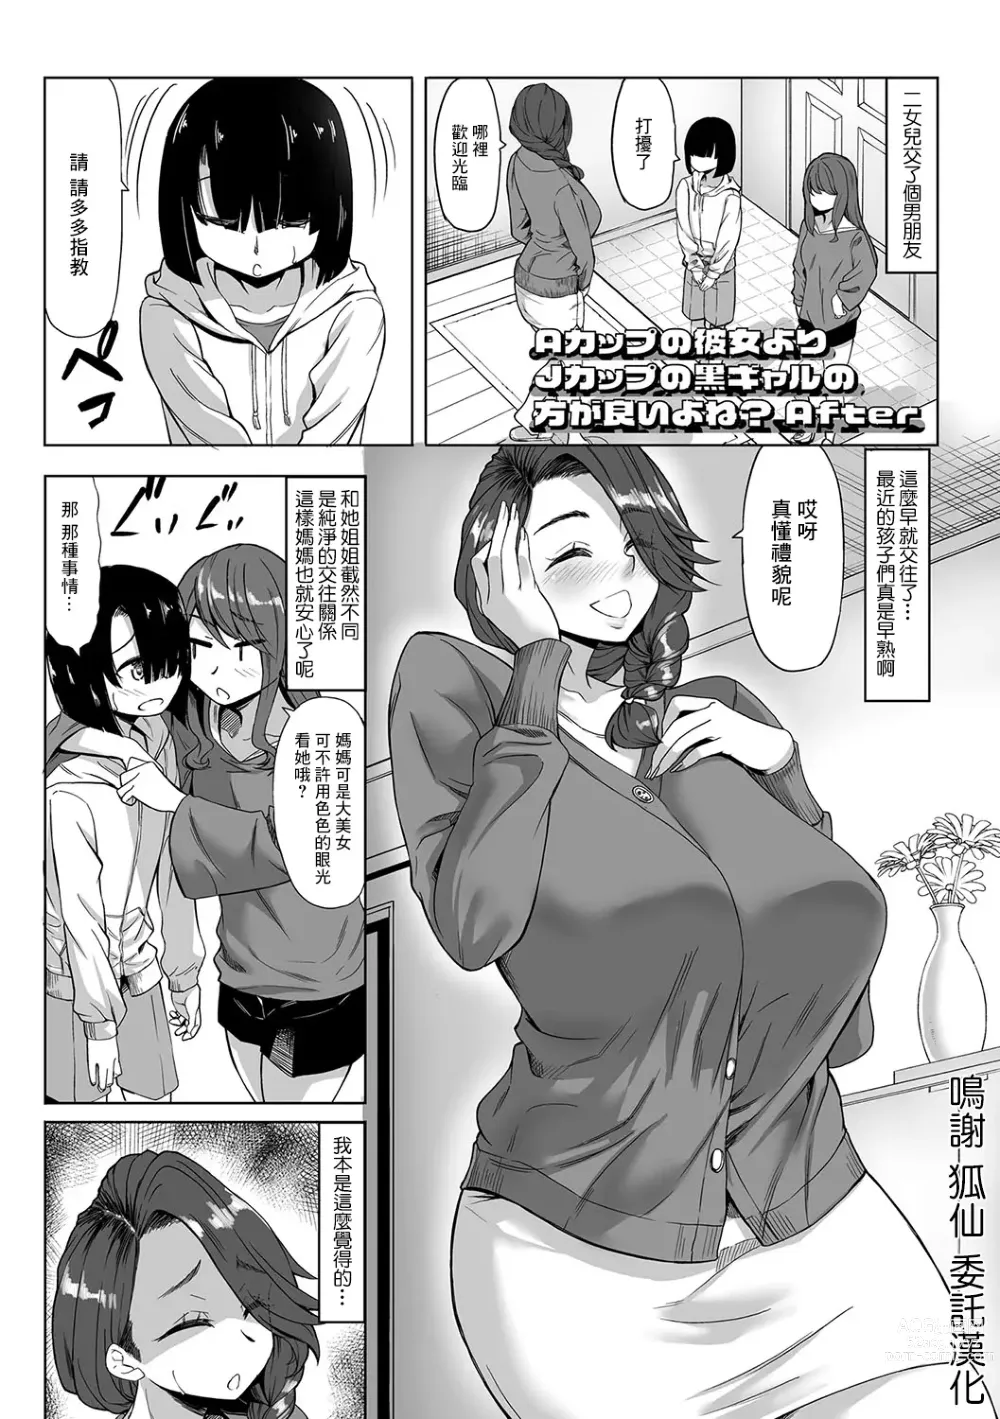 Page 1 of manga A Cup no Kanojo yori J Cup no Kuro Gal no Hou ga Yoi yo ne? After